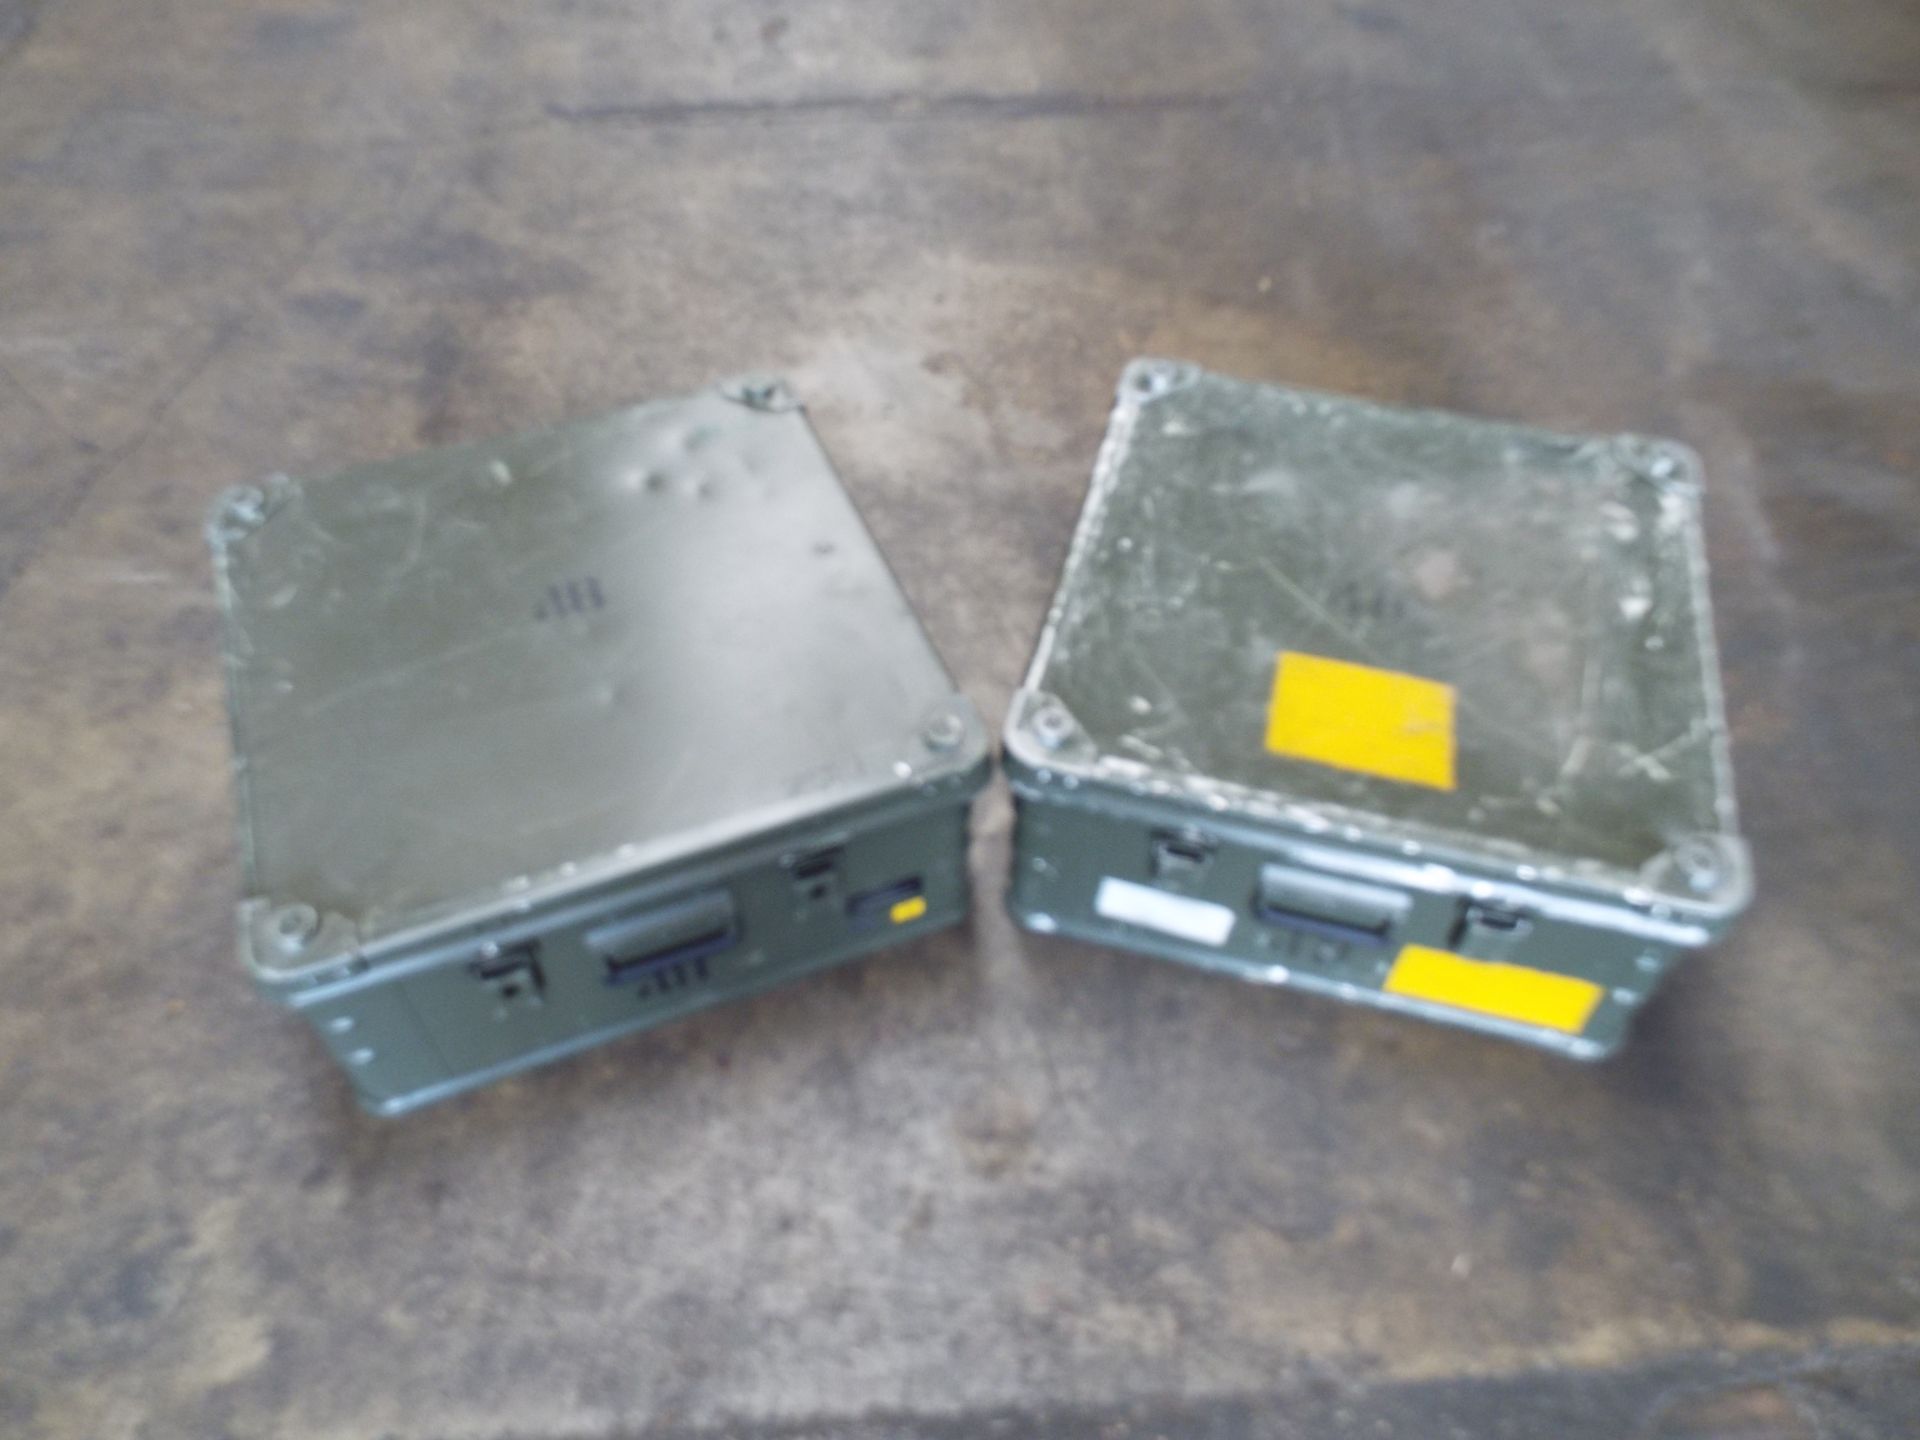 2 x Heavy Duty Zarges Aluminium Cases